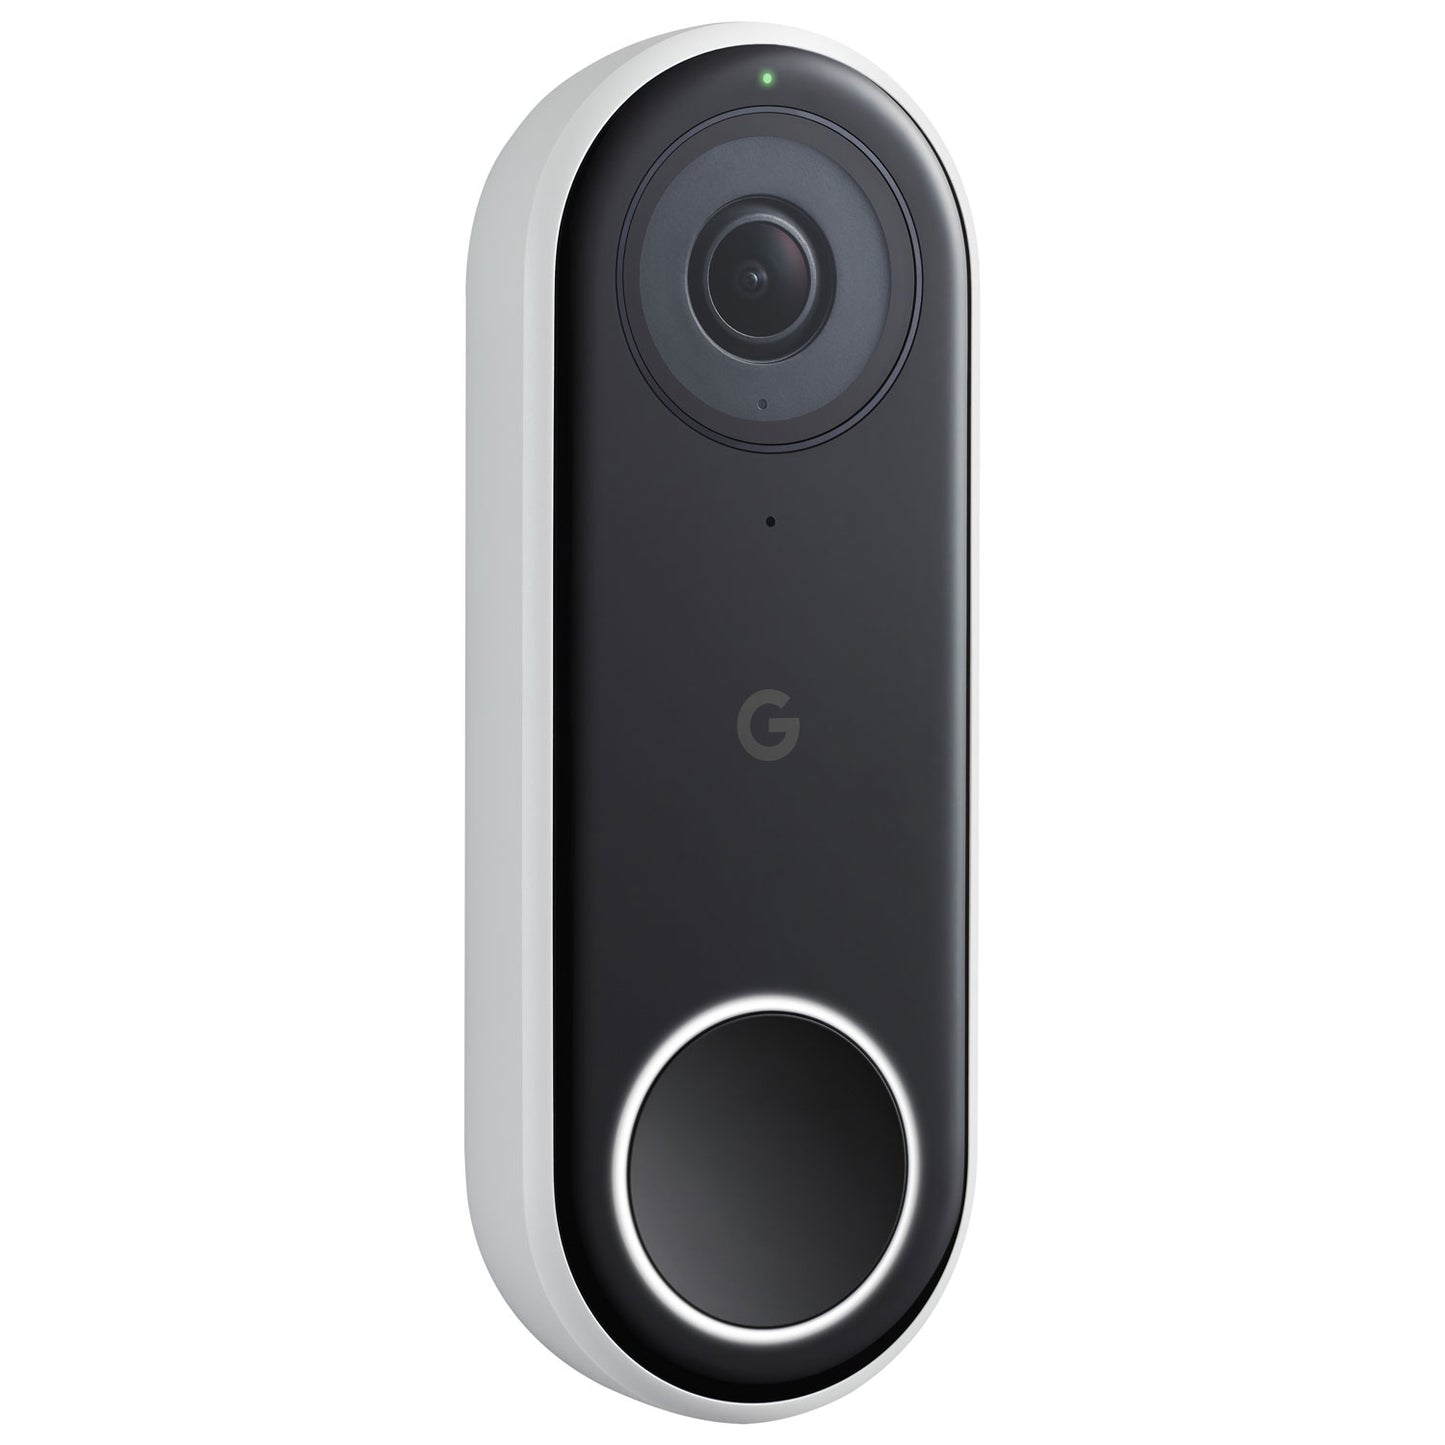 Google Nest Doorbell (Wired) Wi-Fi Video Doorbell -NC5100EF